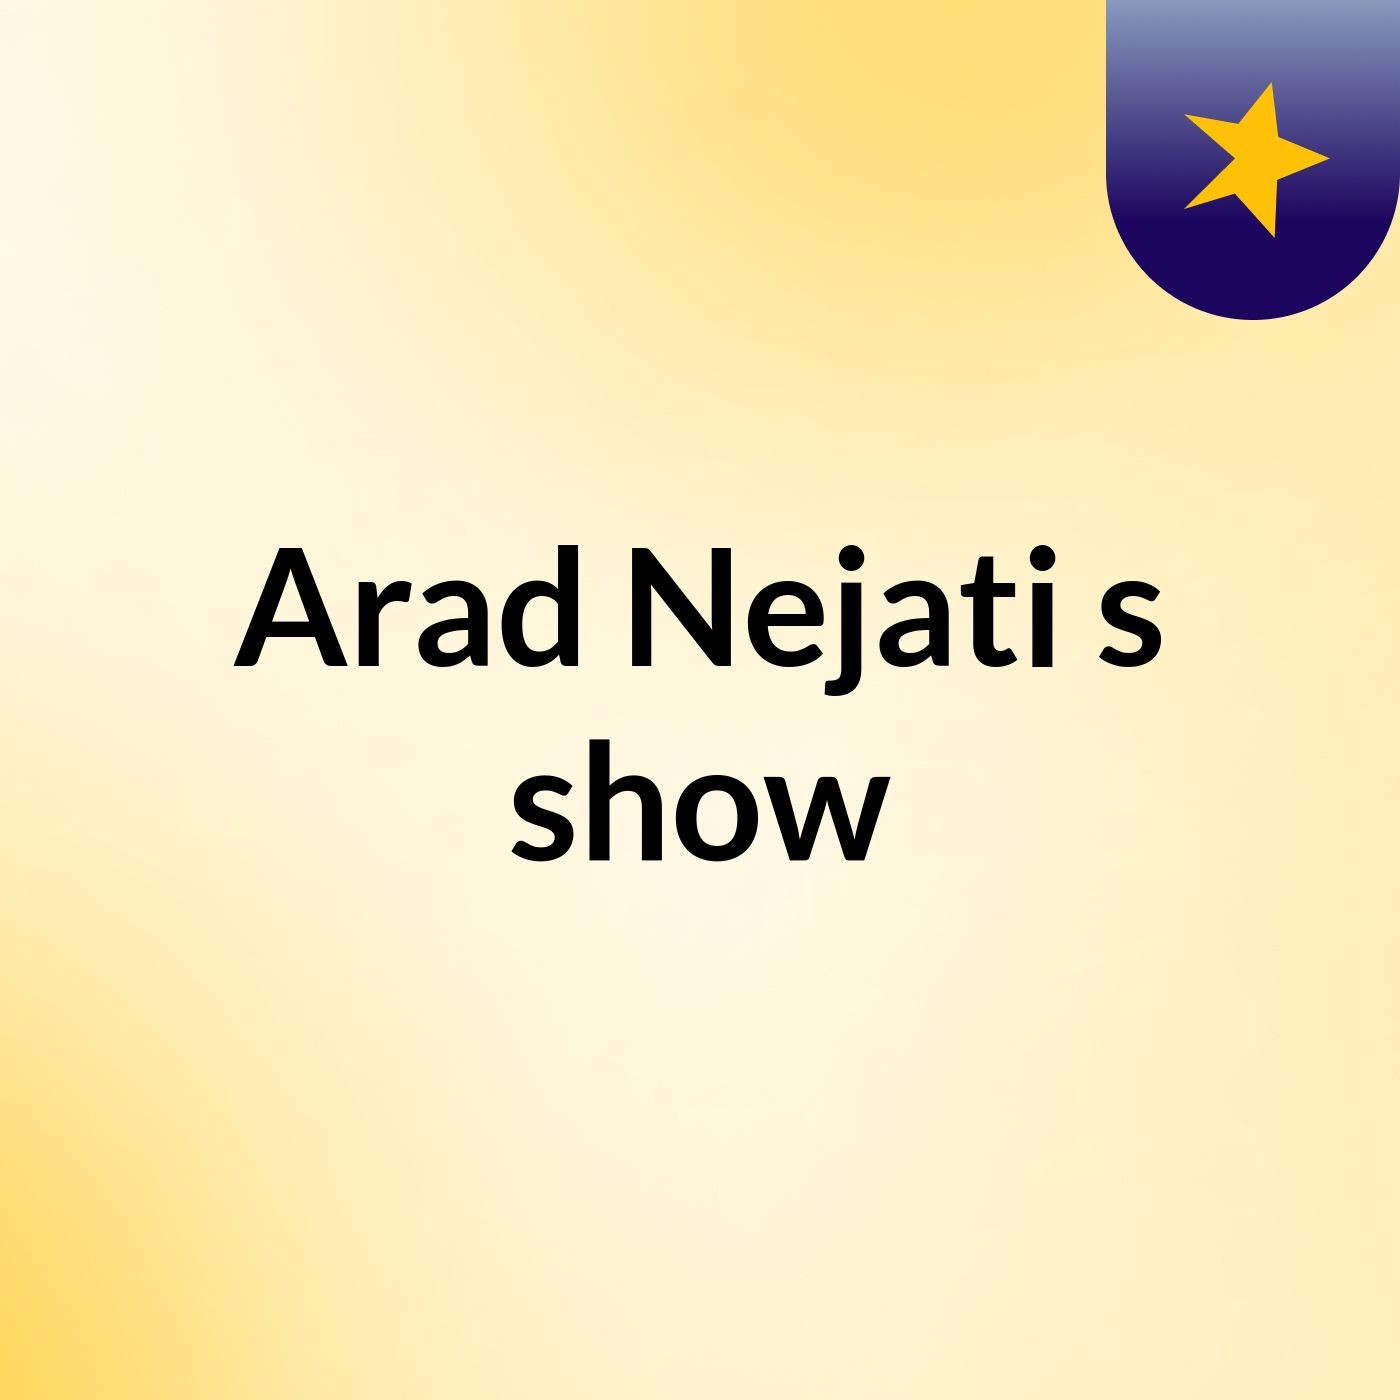 Arad Nejati's show